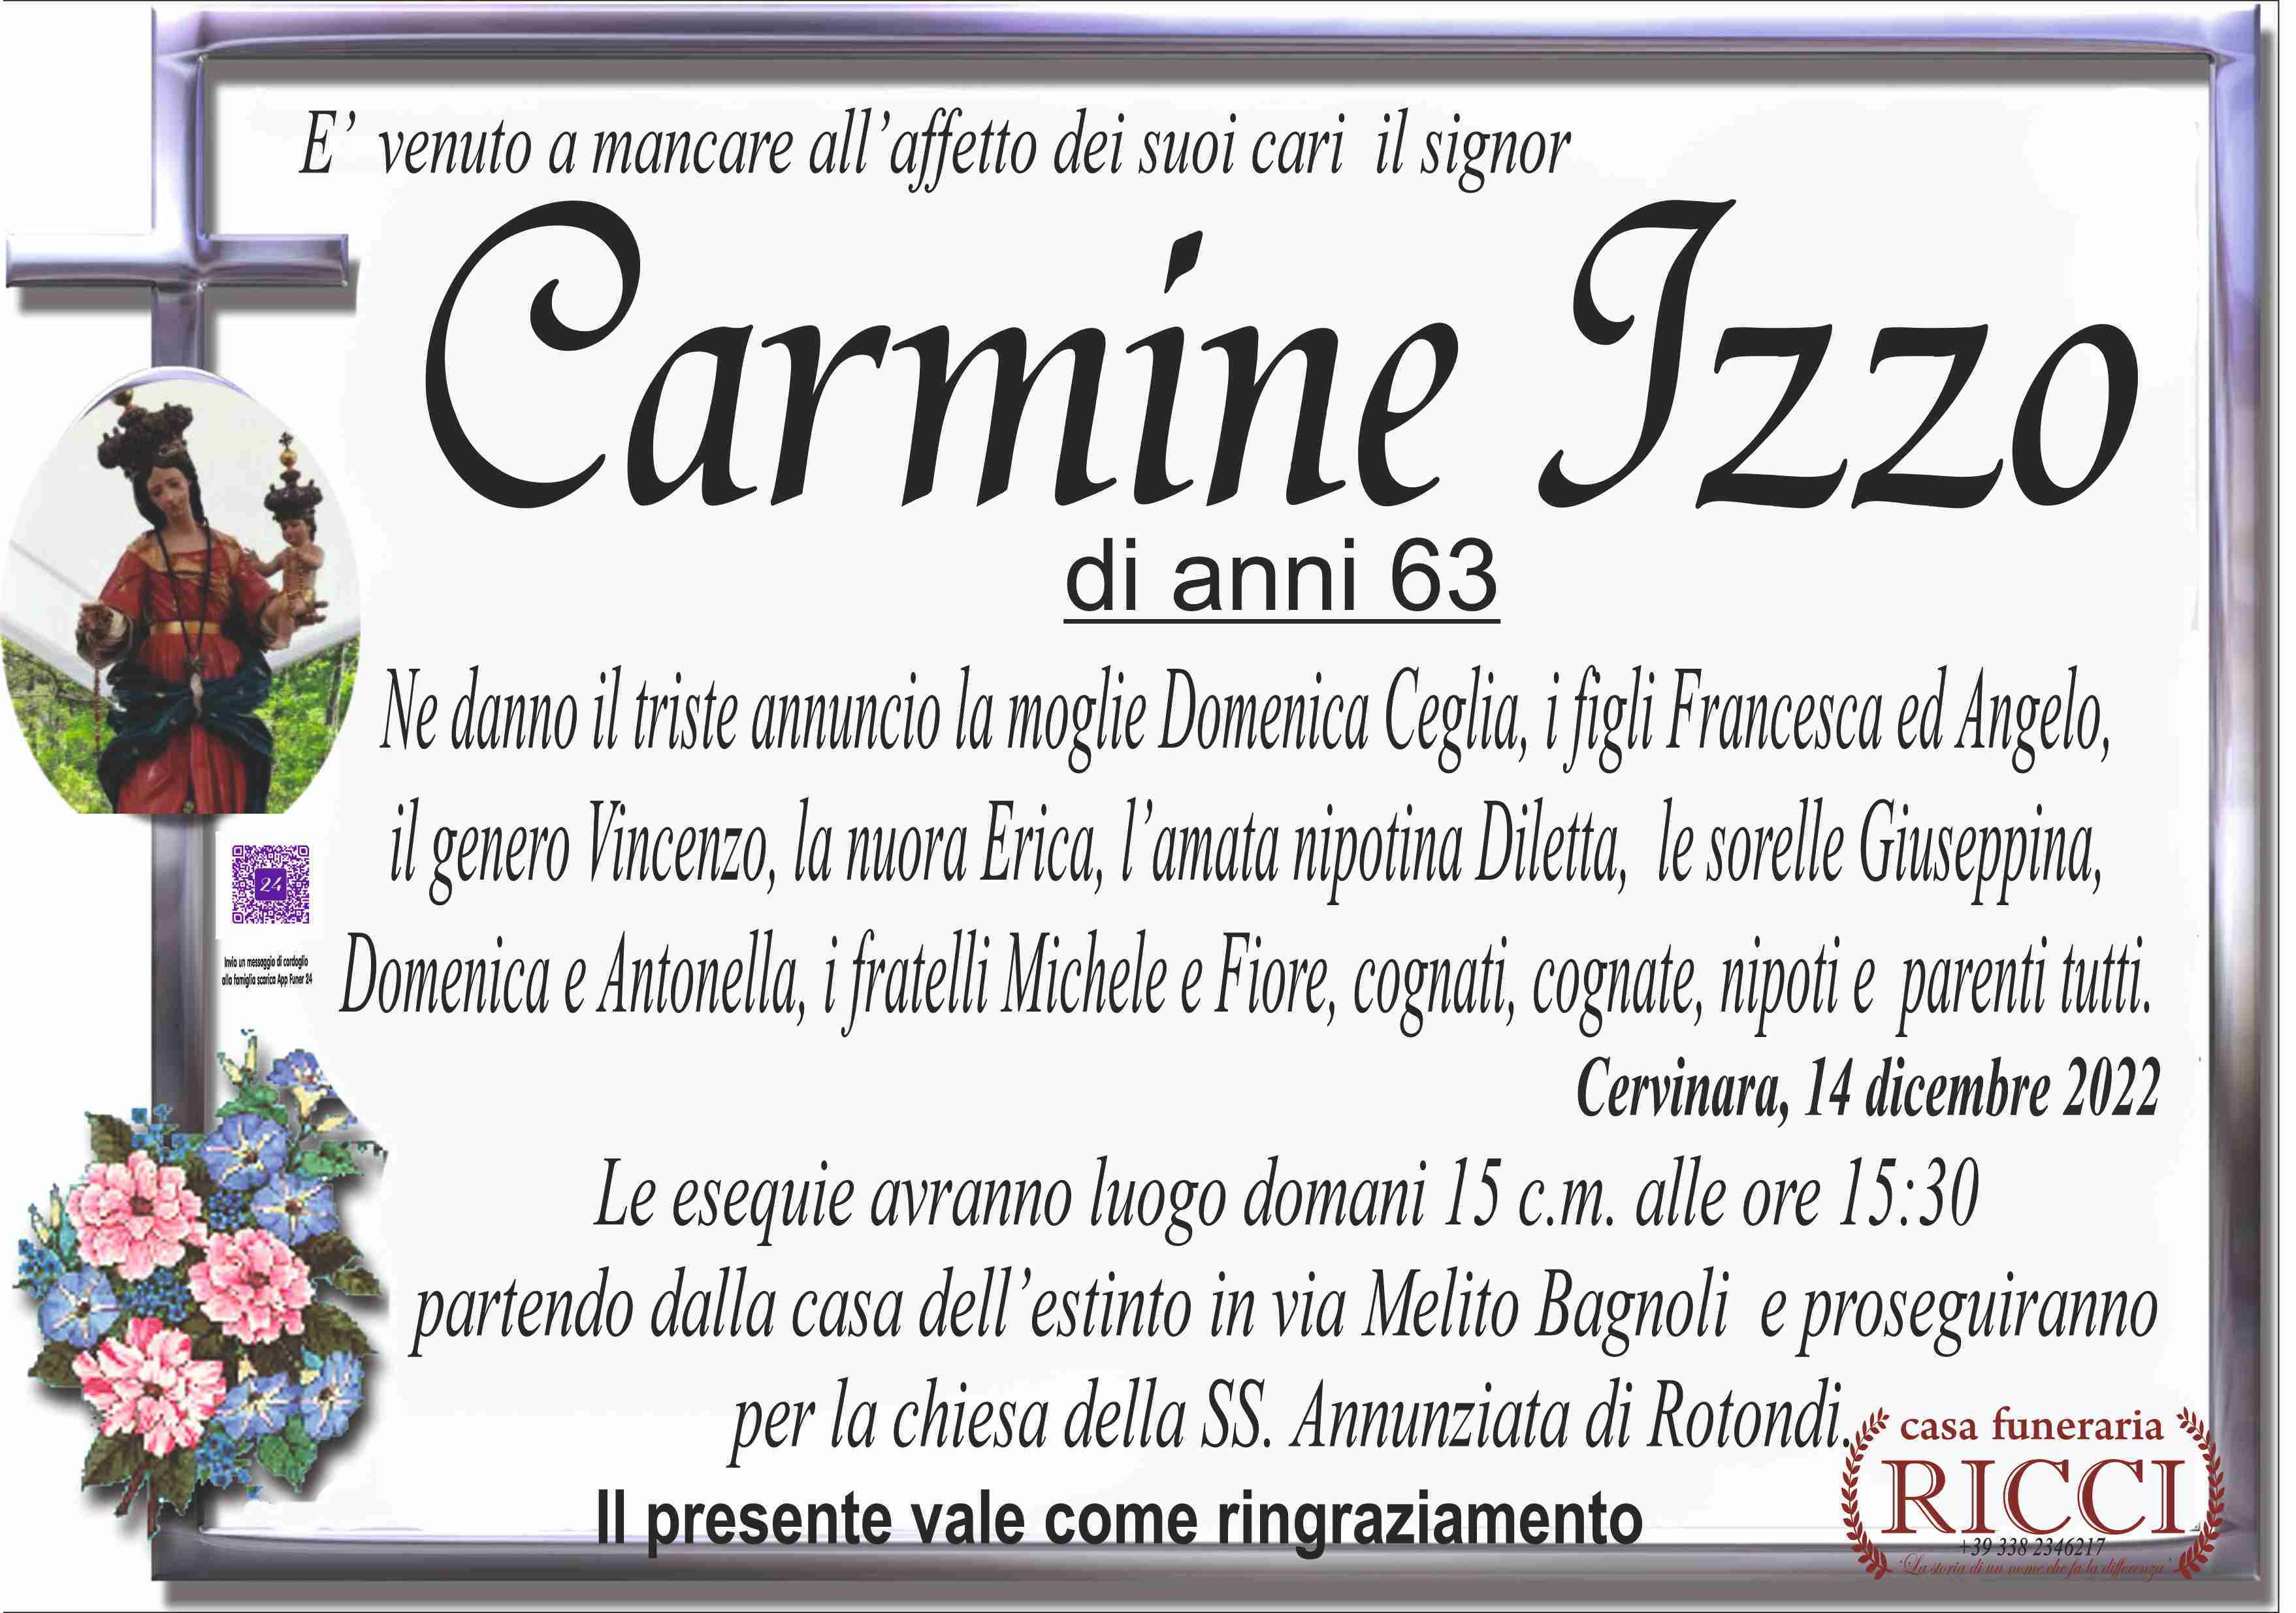 Carmine Izzo